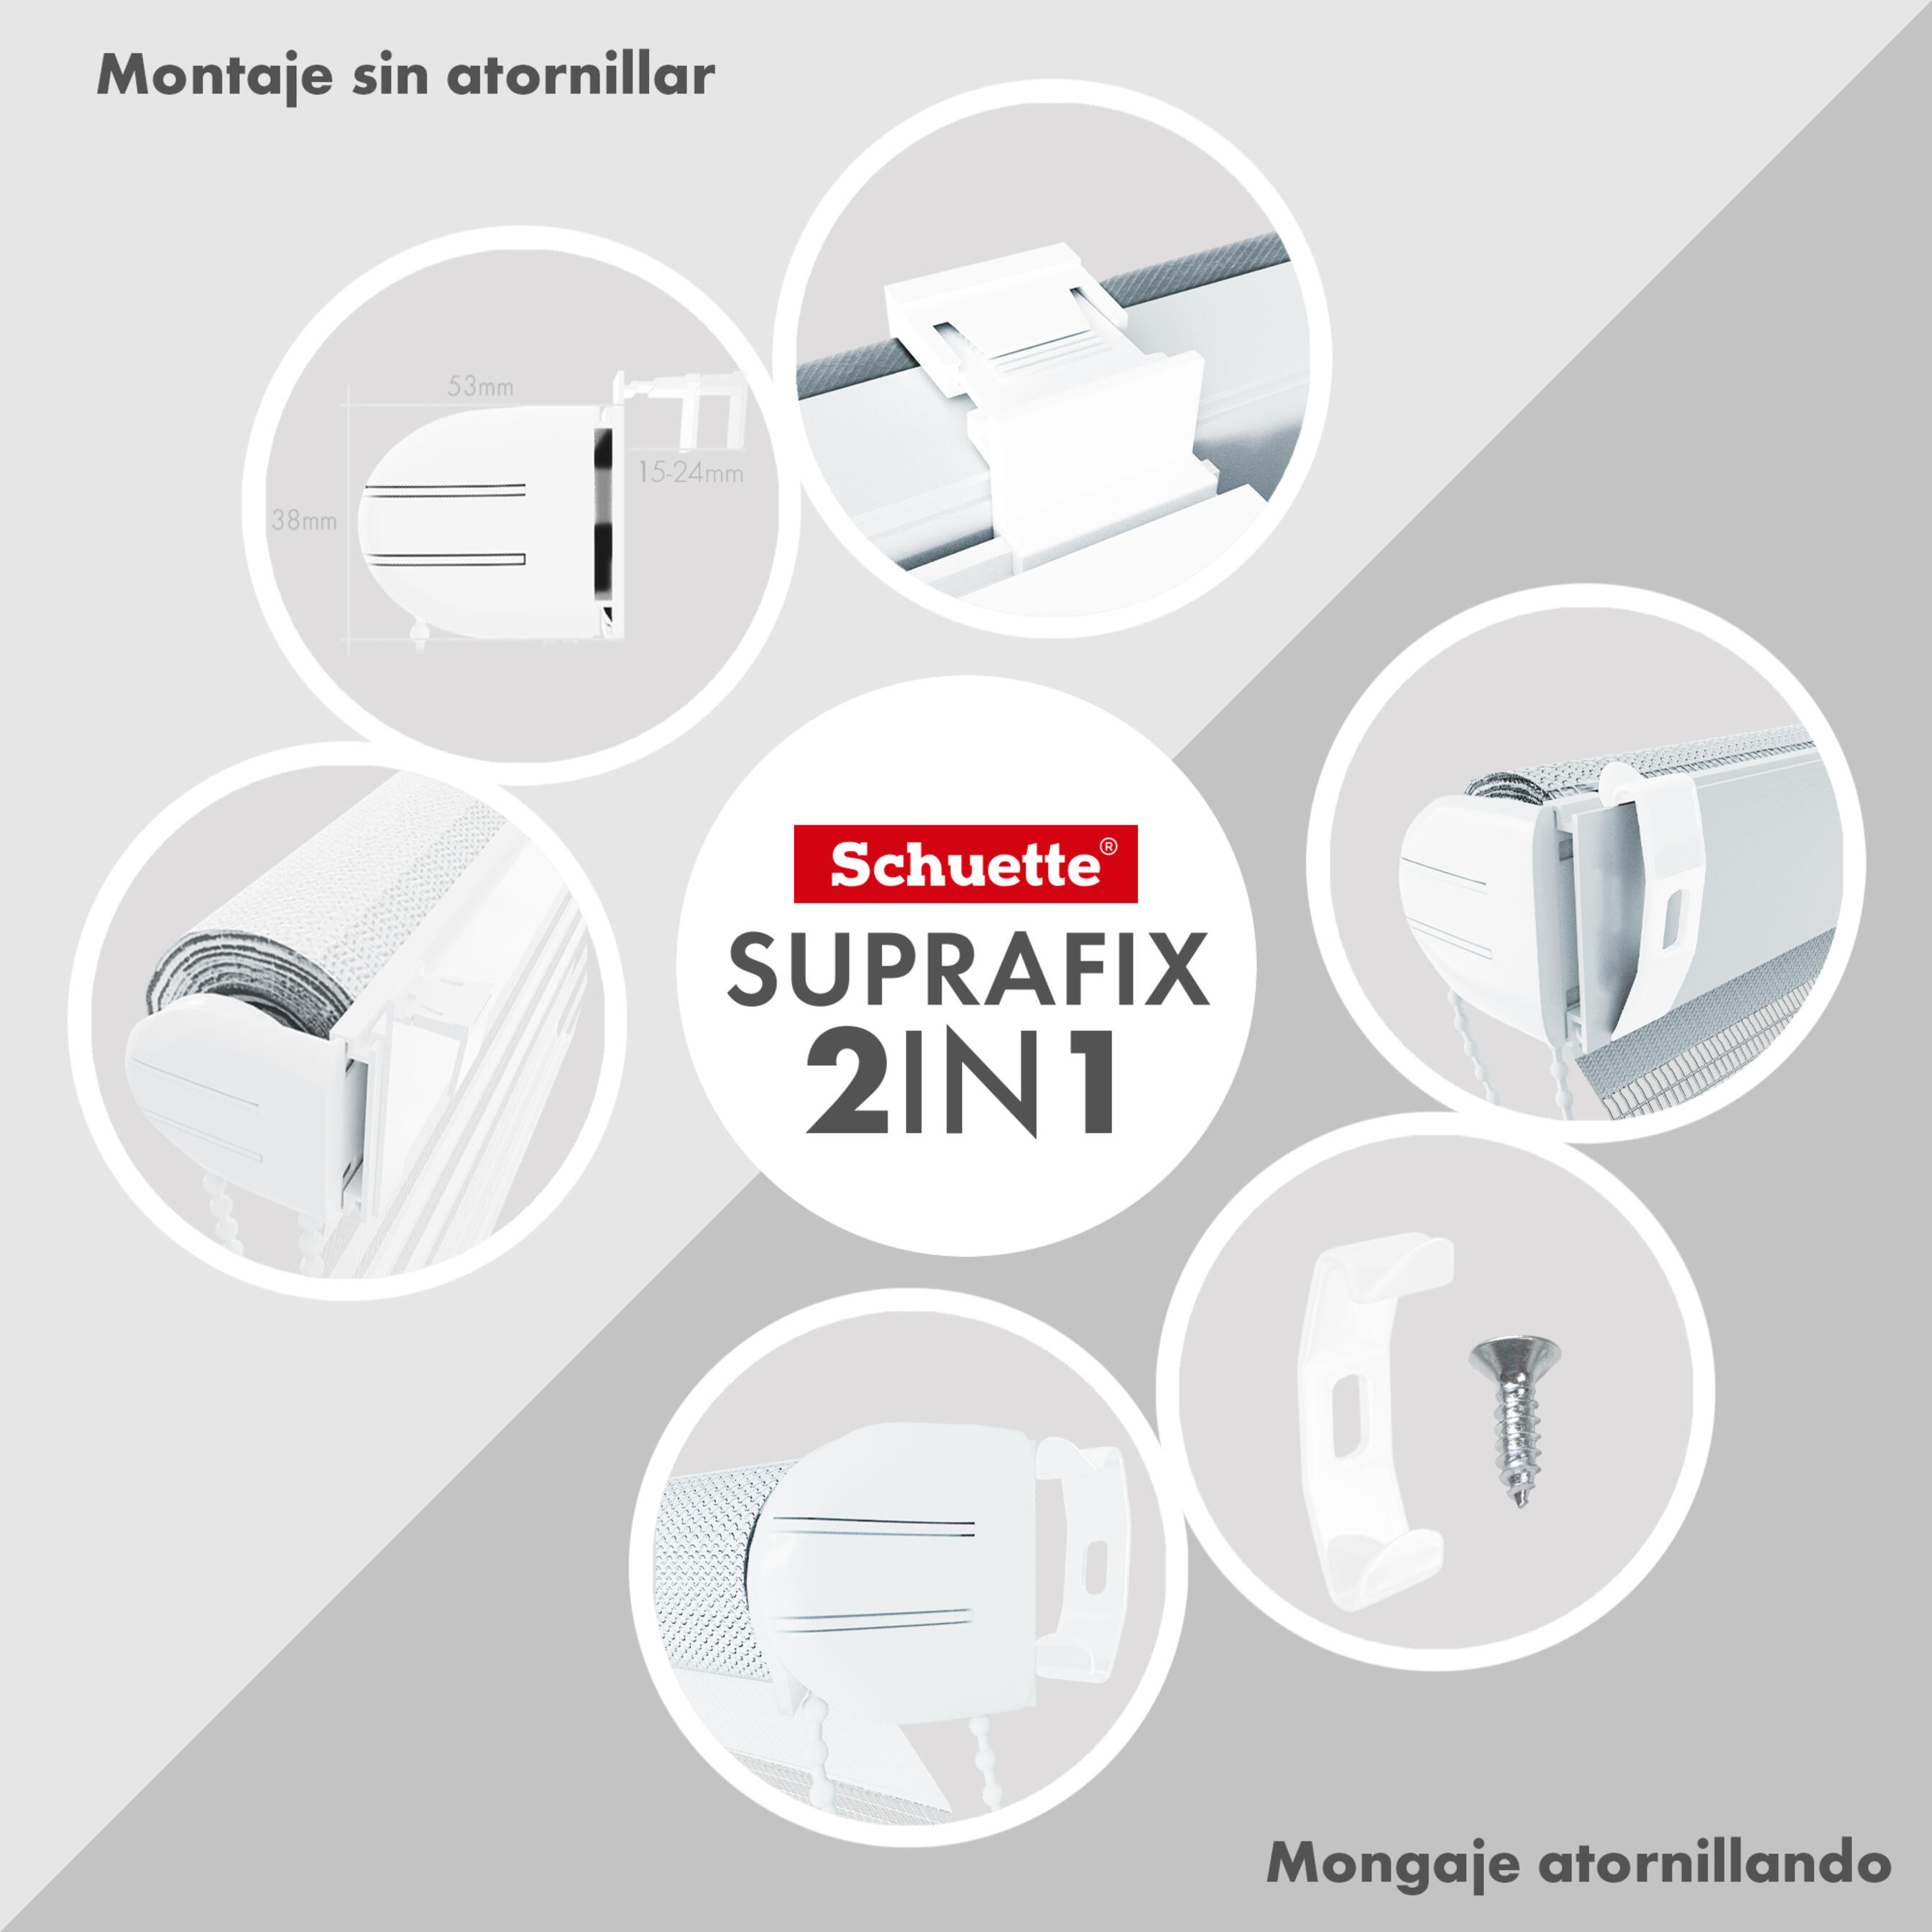 Soporte de pinza Schuette® Suprafix (incl. almohadillas adhesivas) y soporte de tornillo de clip (incl. tornillos)